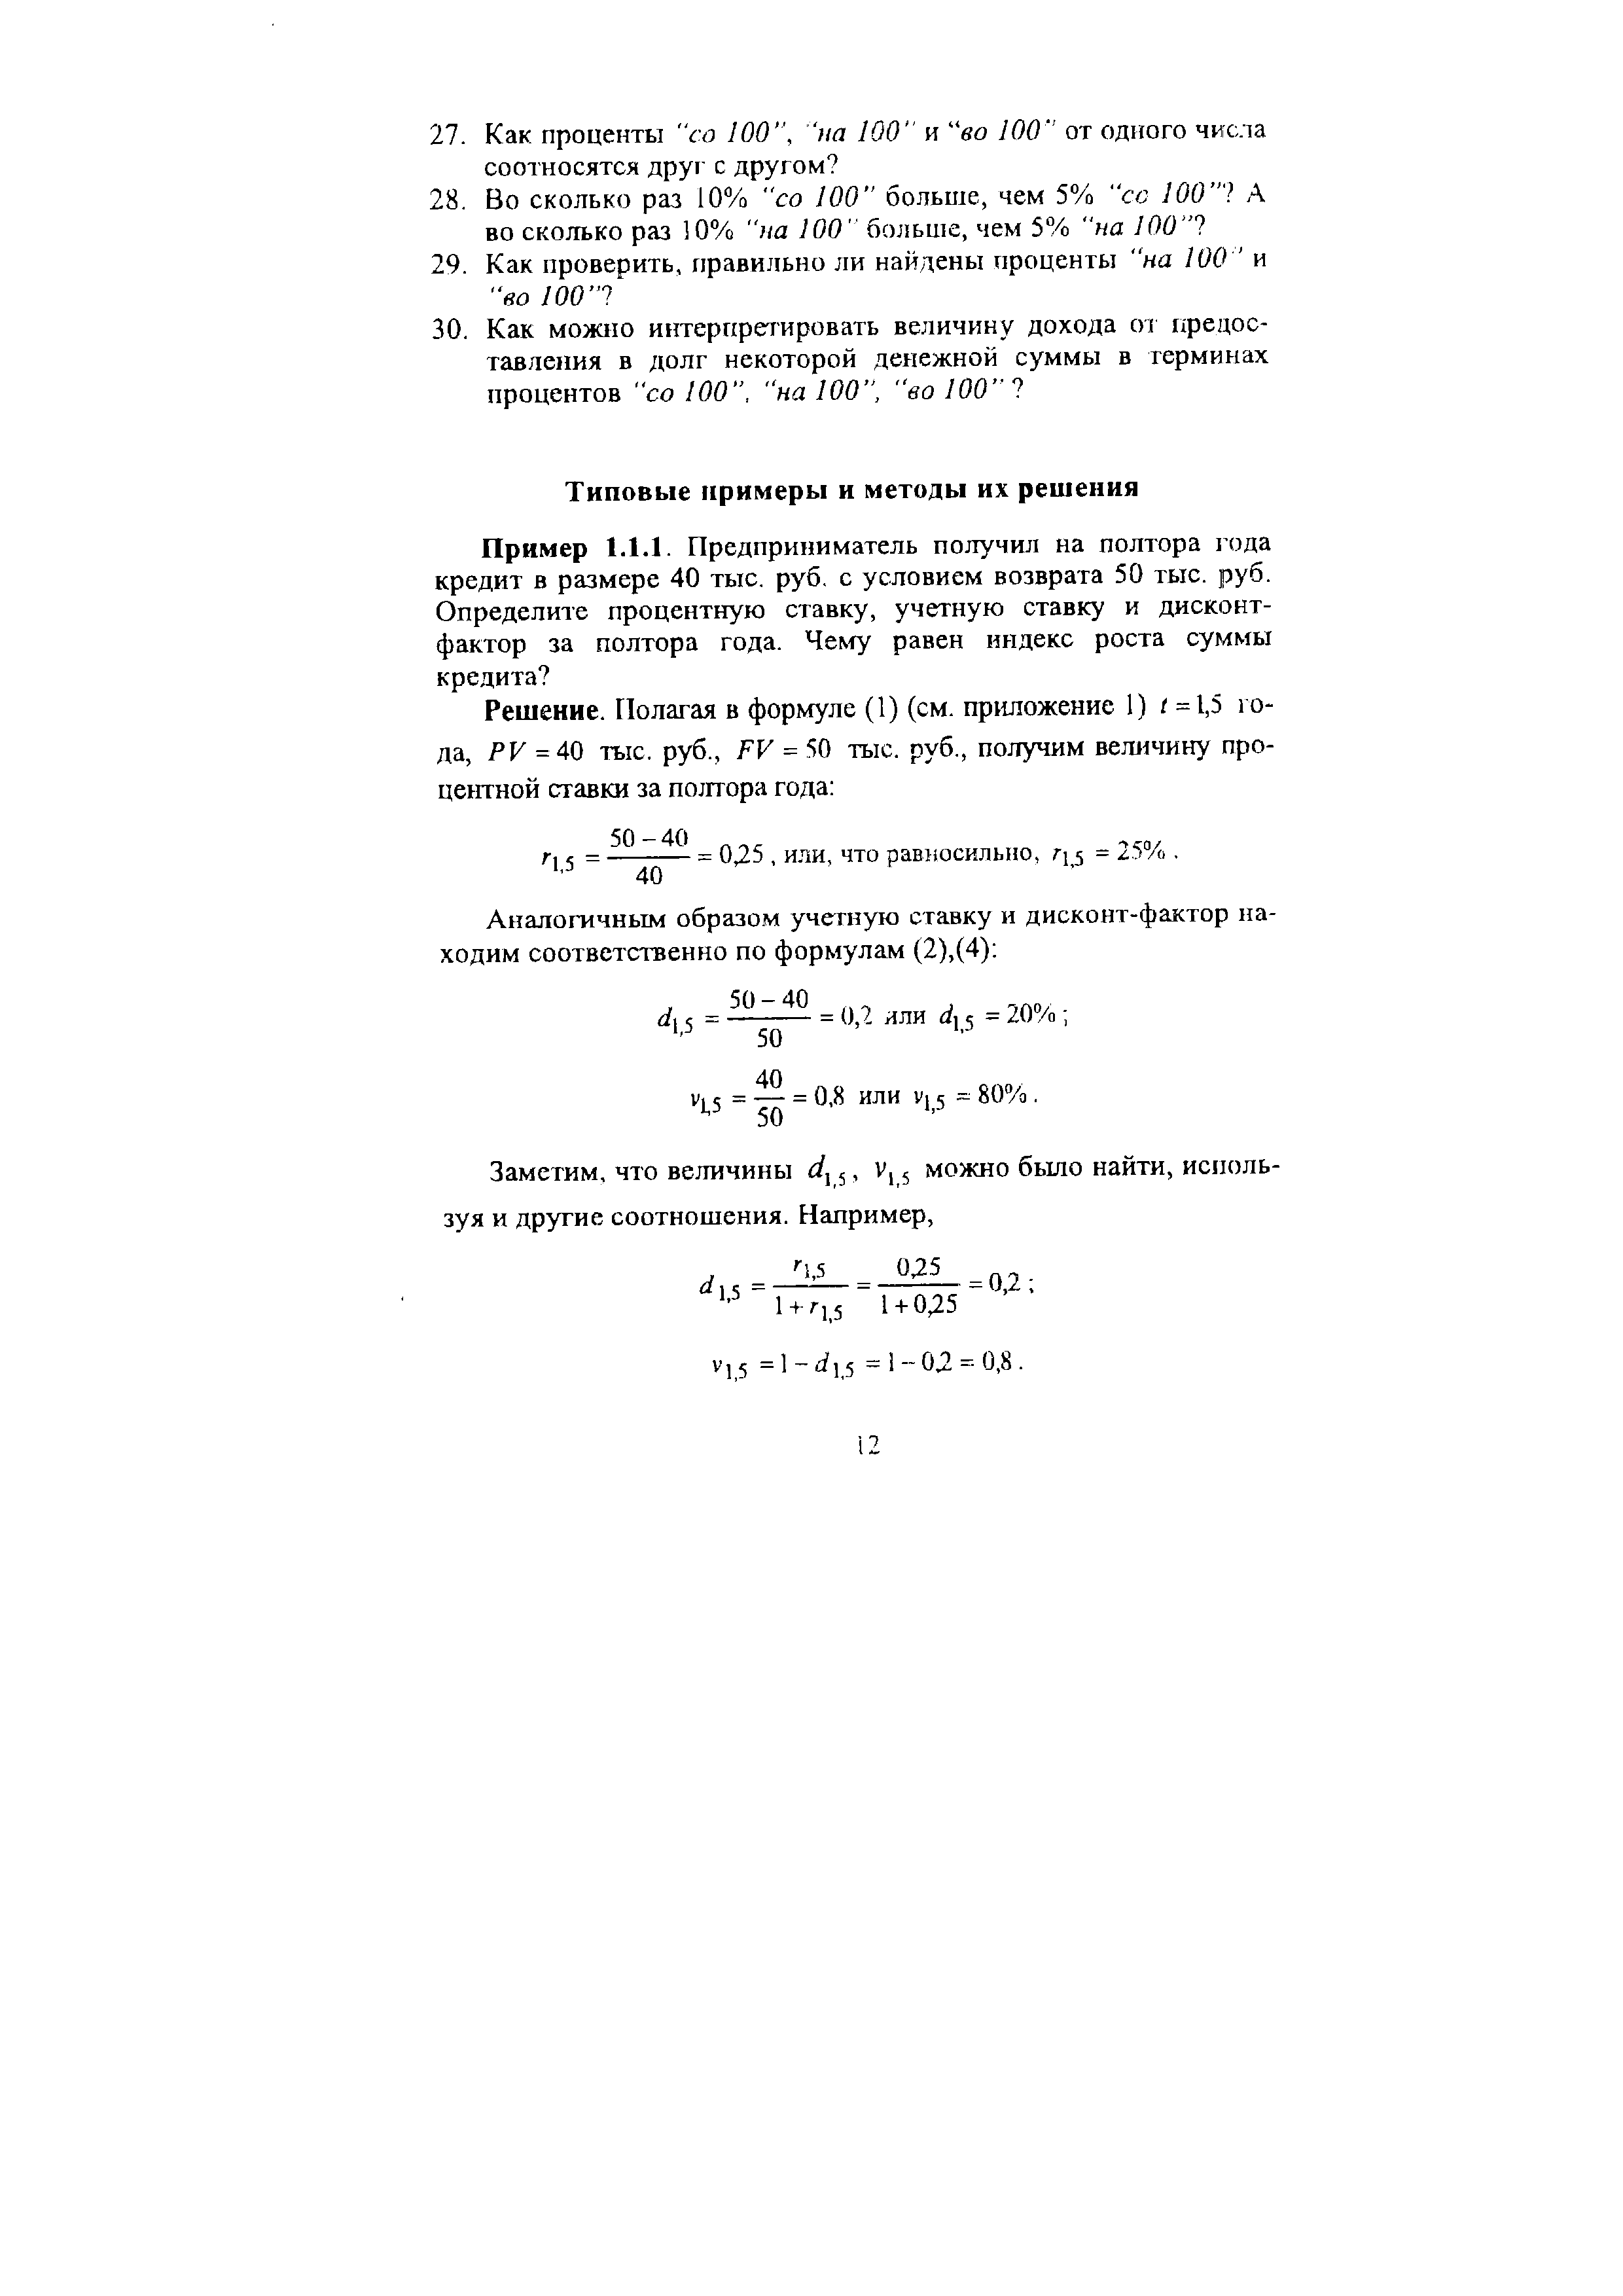 Г] j = - = 0,25, или, что равносильно, г = 25%. 
